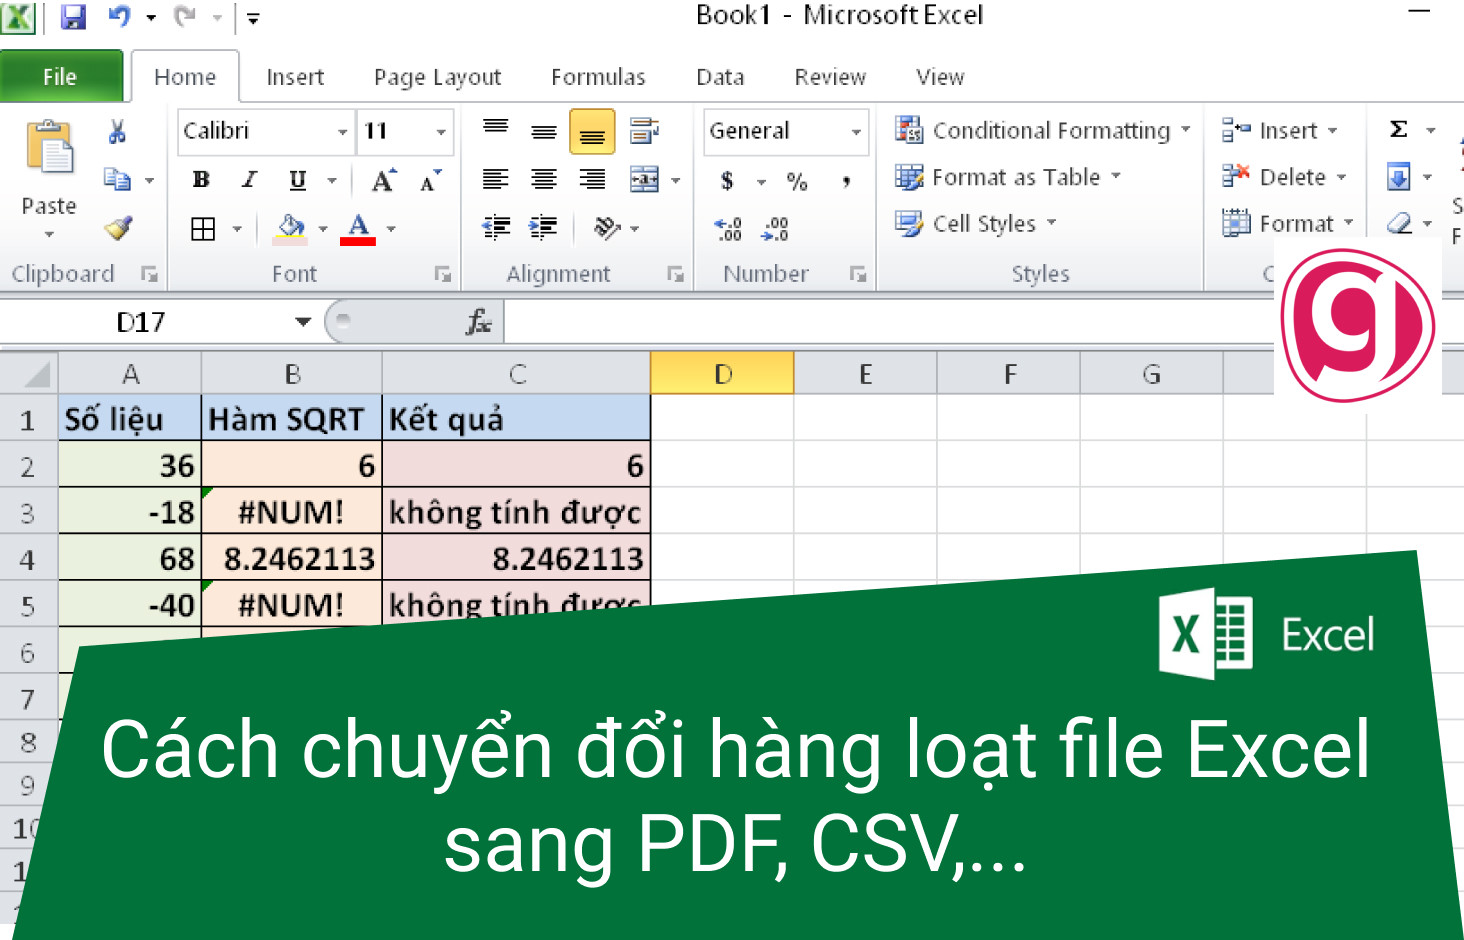 Làm sao để chuyển đổi một file Excel với nhiều sheet thành nhiều file PDF khác nhau?